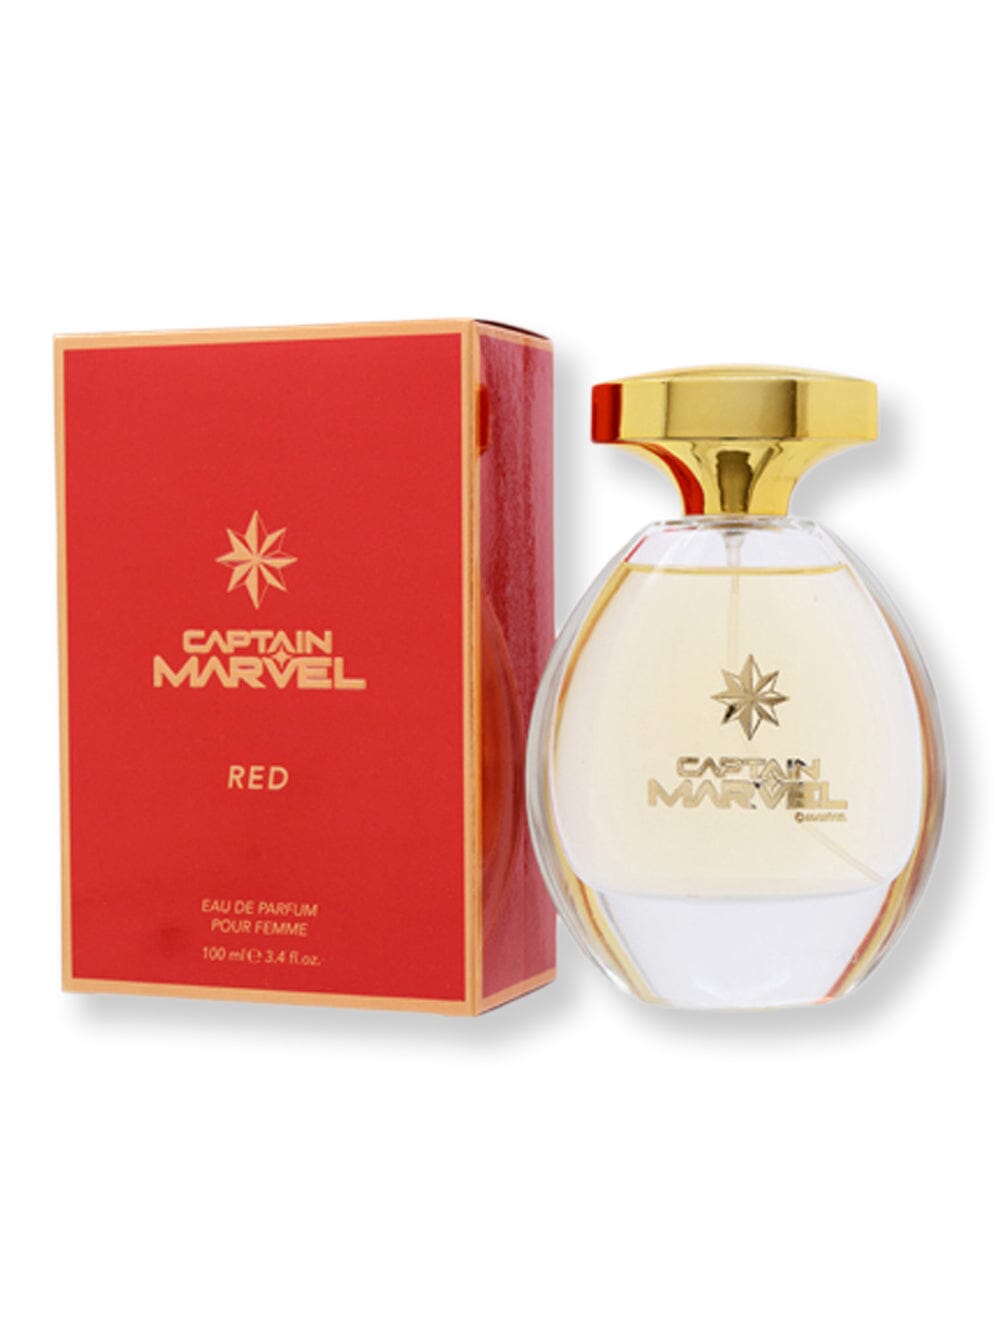 Marvel Marvel Captain Marvel Red EDP Spray 3.4 oz100 ml Perfume 